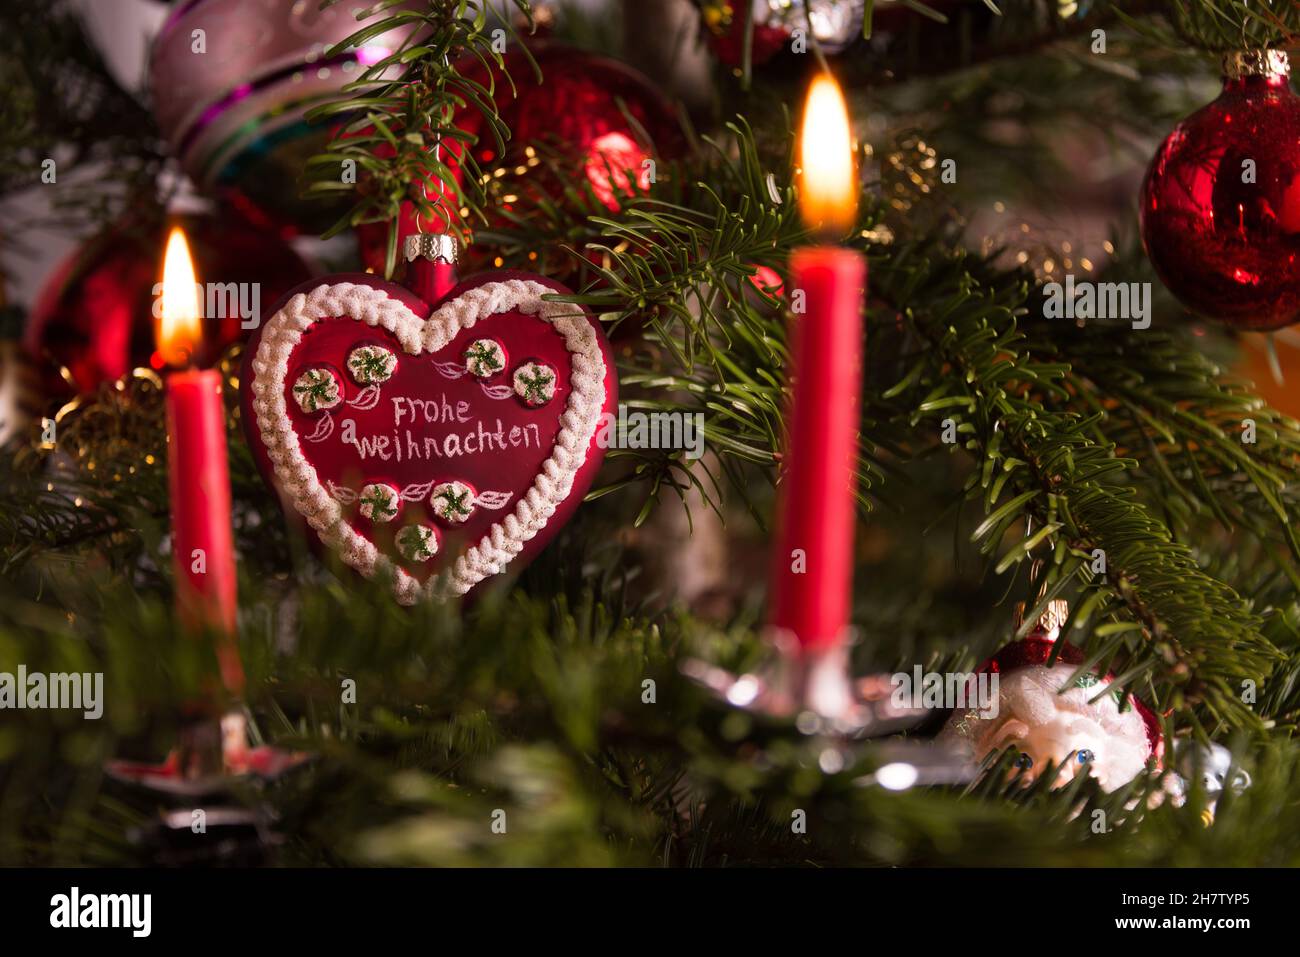 Weihnachtsbaumschmuck an einem Weihnachtsbaum Stock Photo